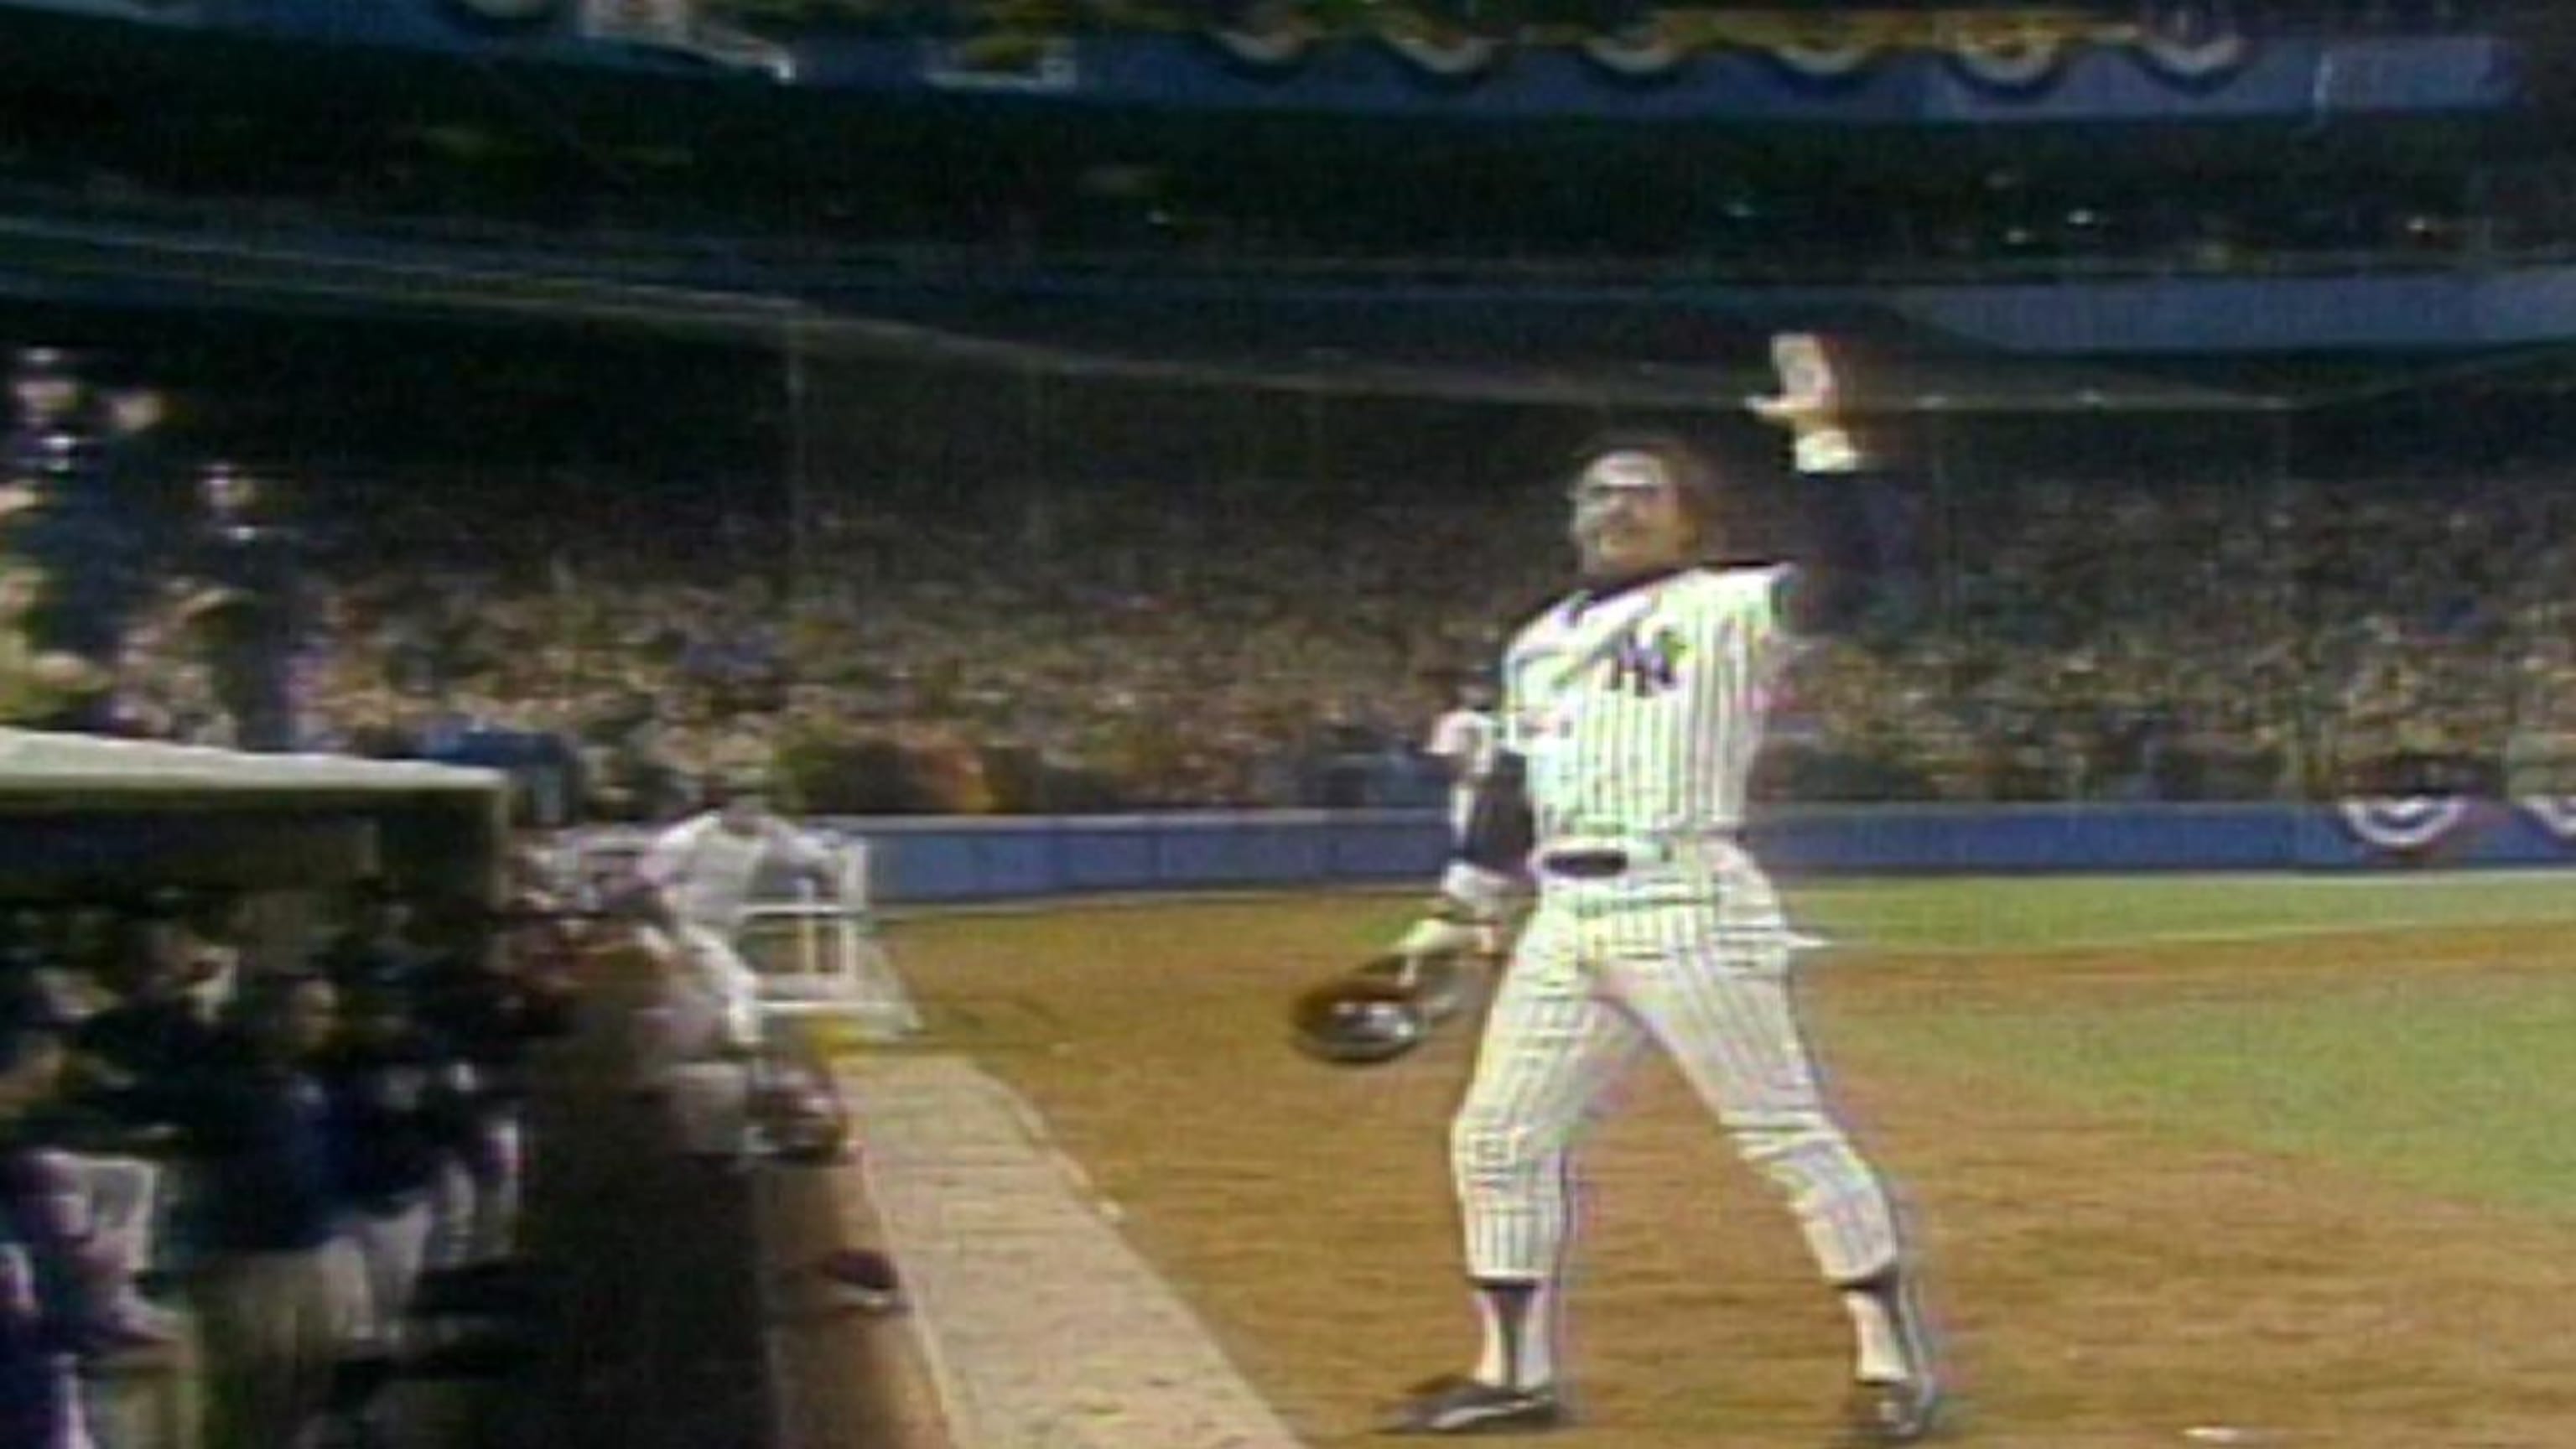 Mr. October (Reggie Jackson) New York Yankees - Officially Licensed